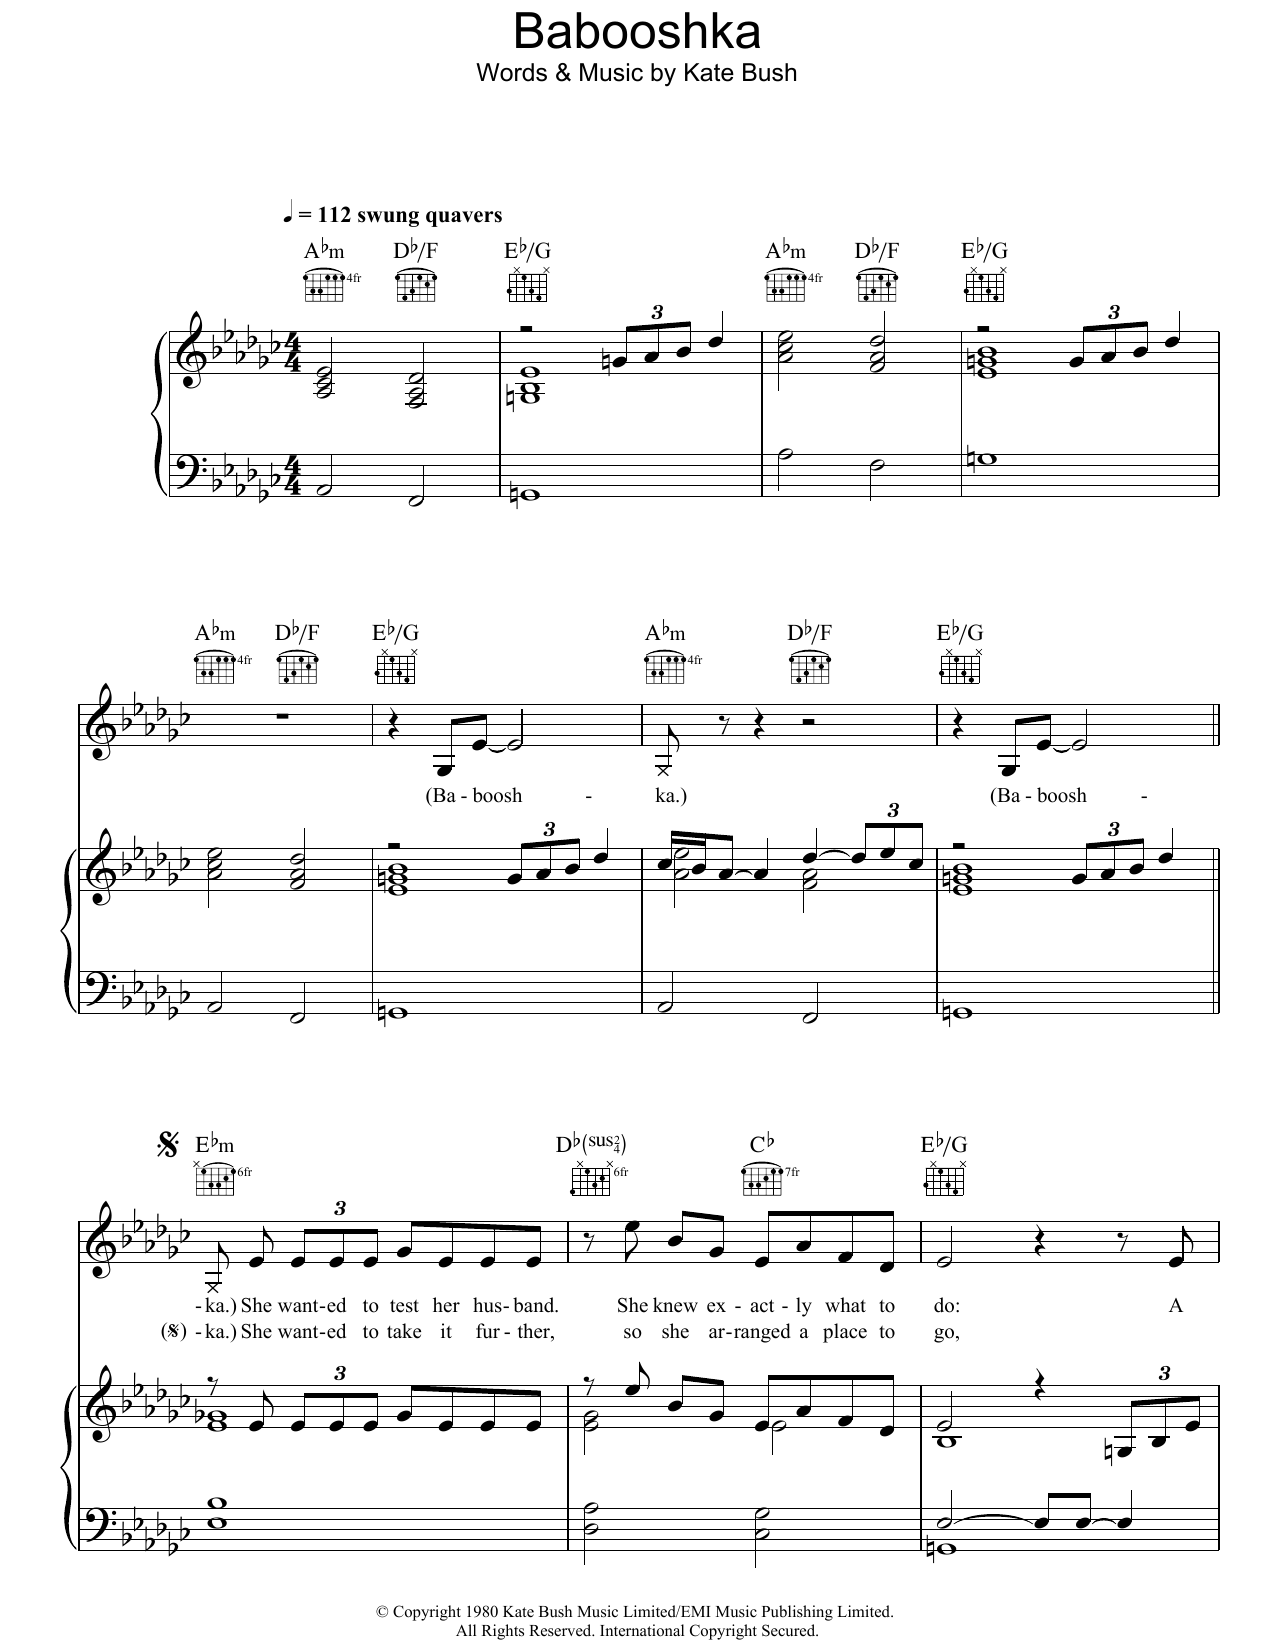 Kate Bush Babooshka Sheet Music Notes & Chords for Lyrics & Chords - Download or Print PDF